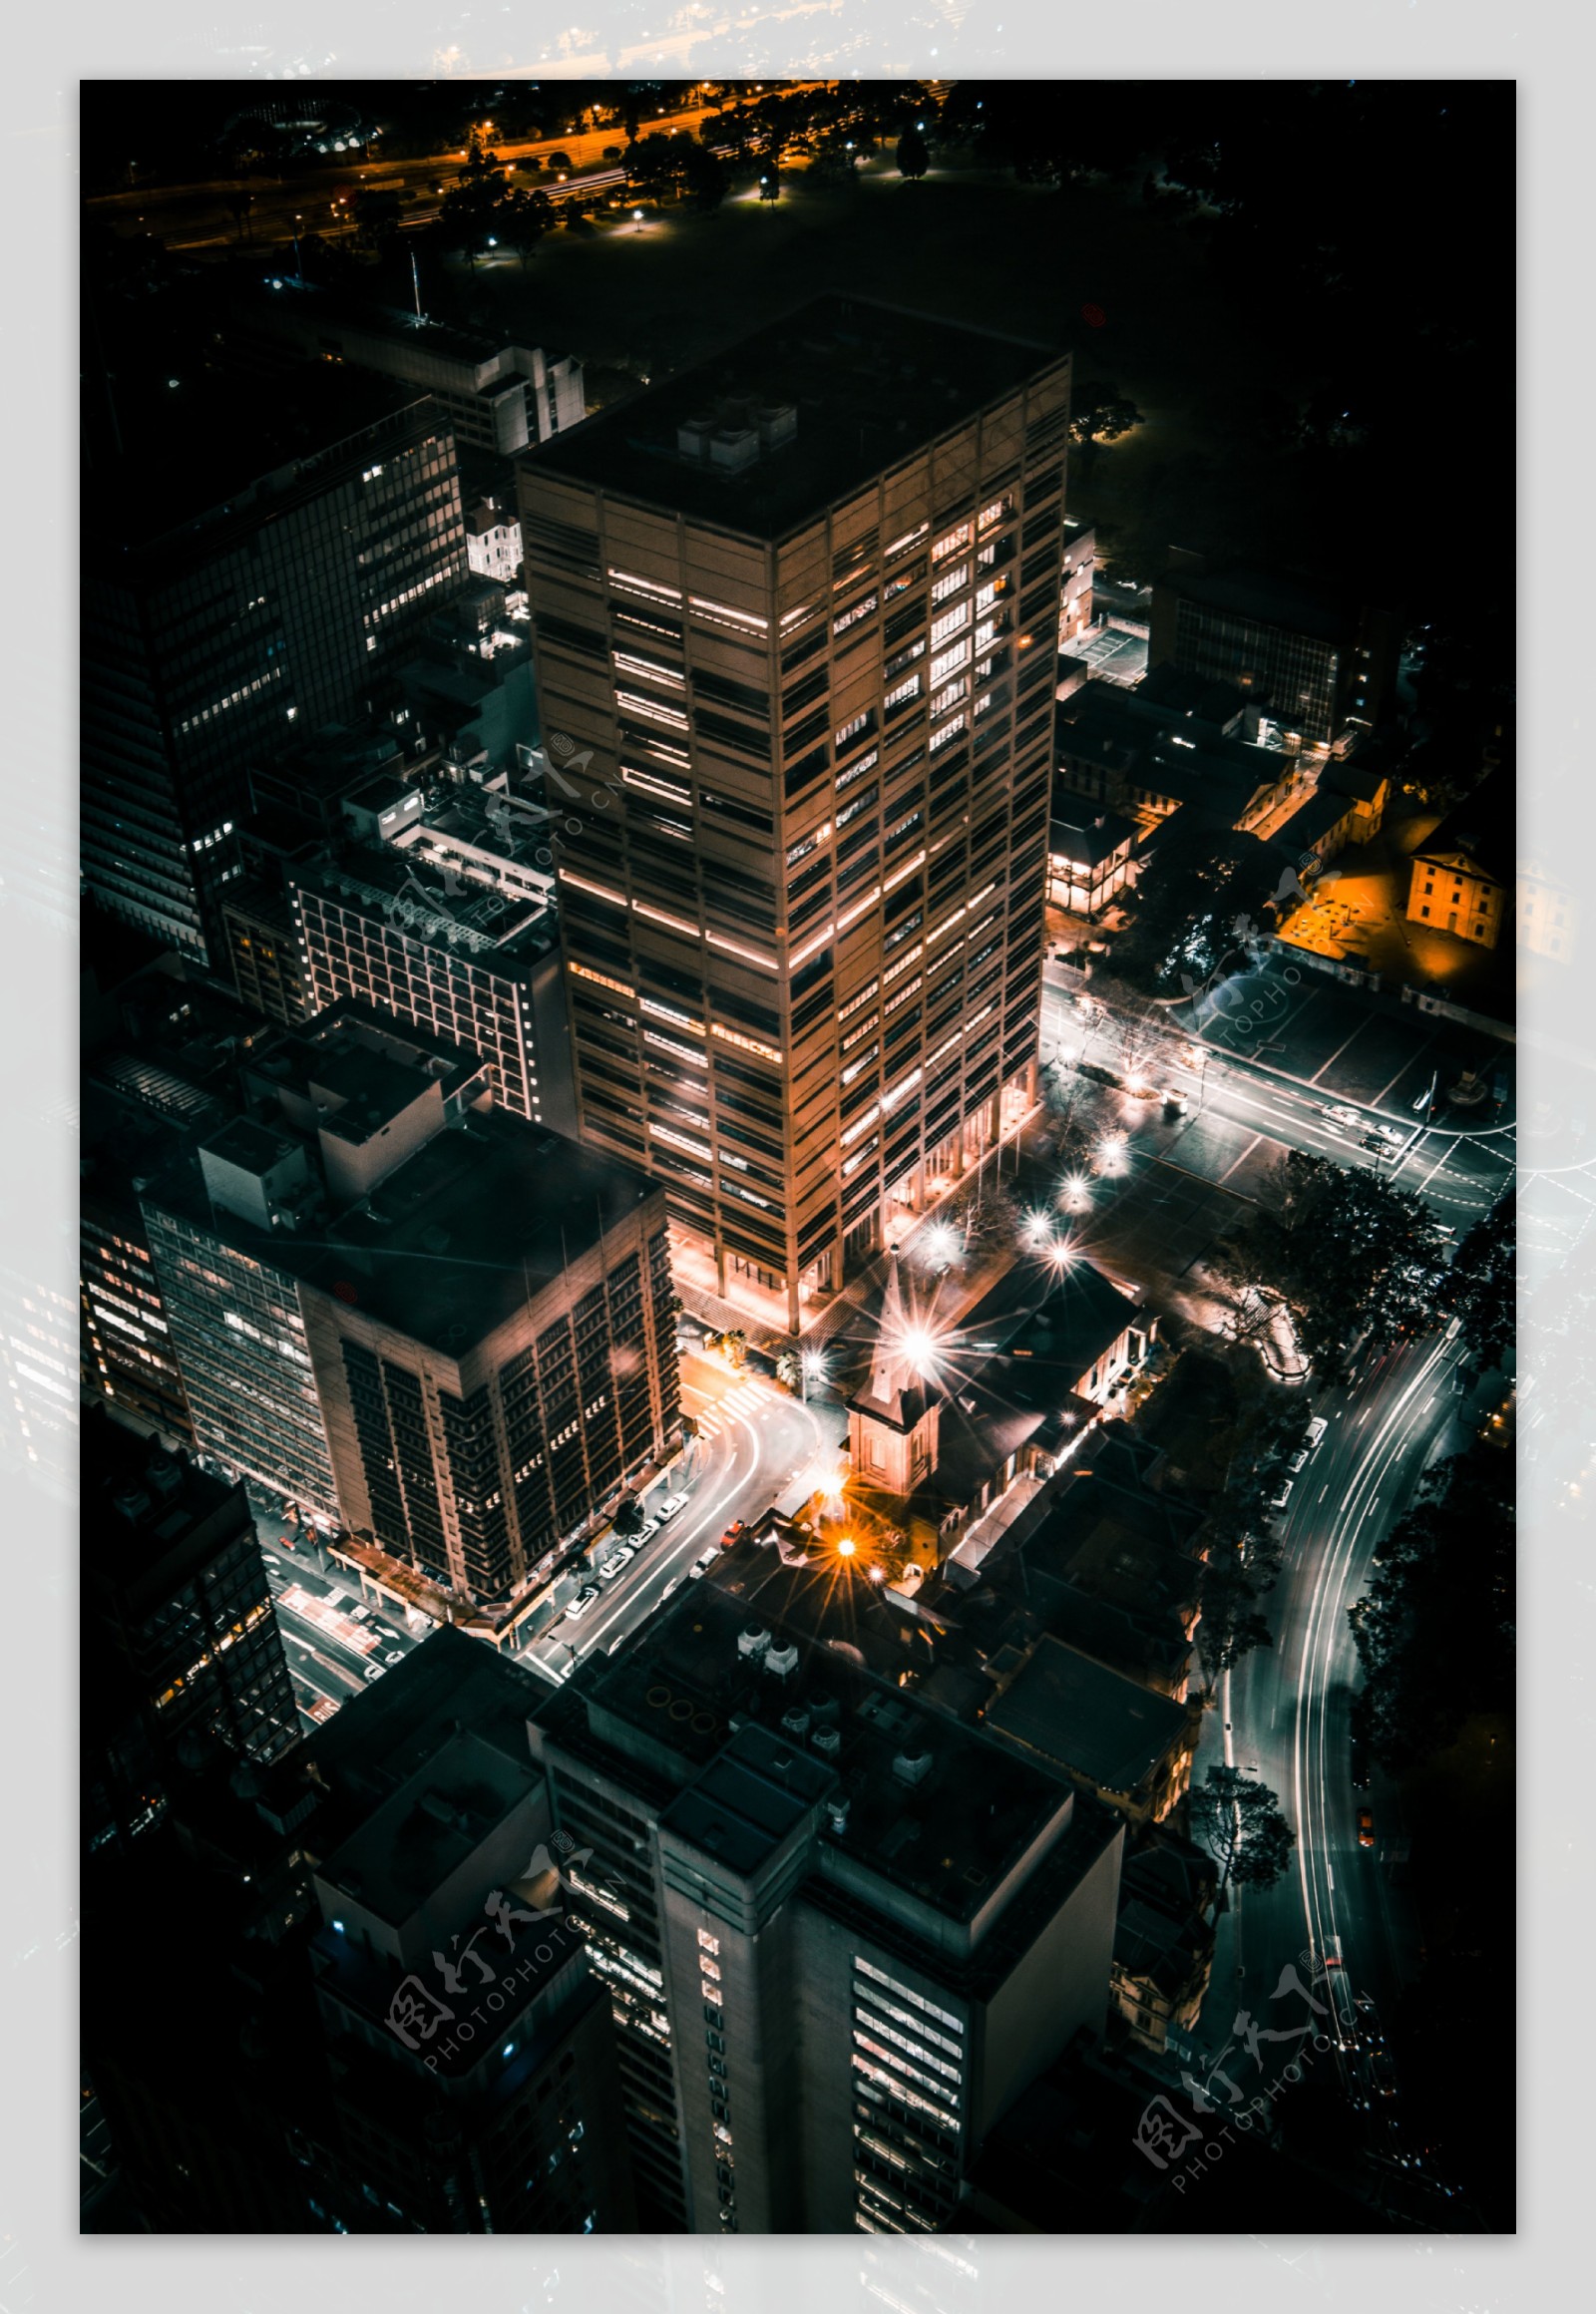 俯视城市夜景